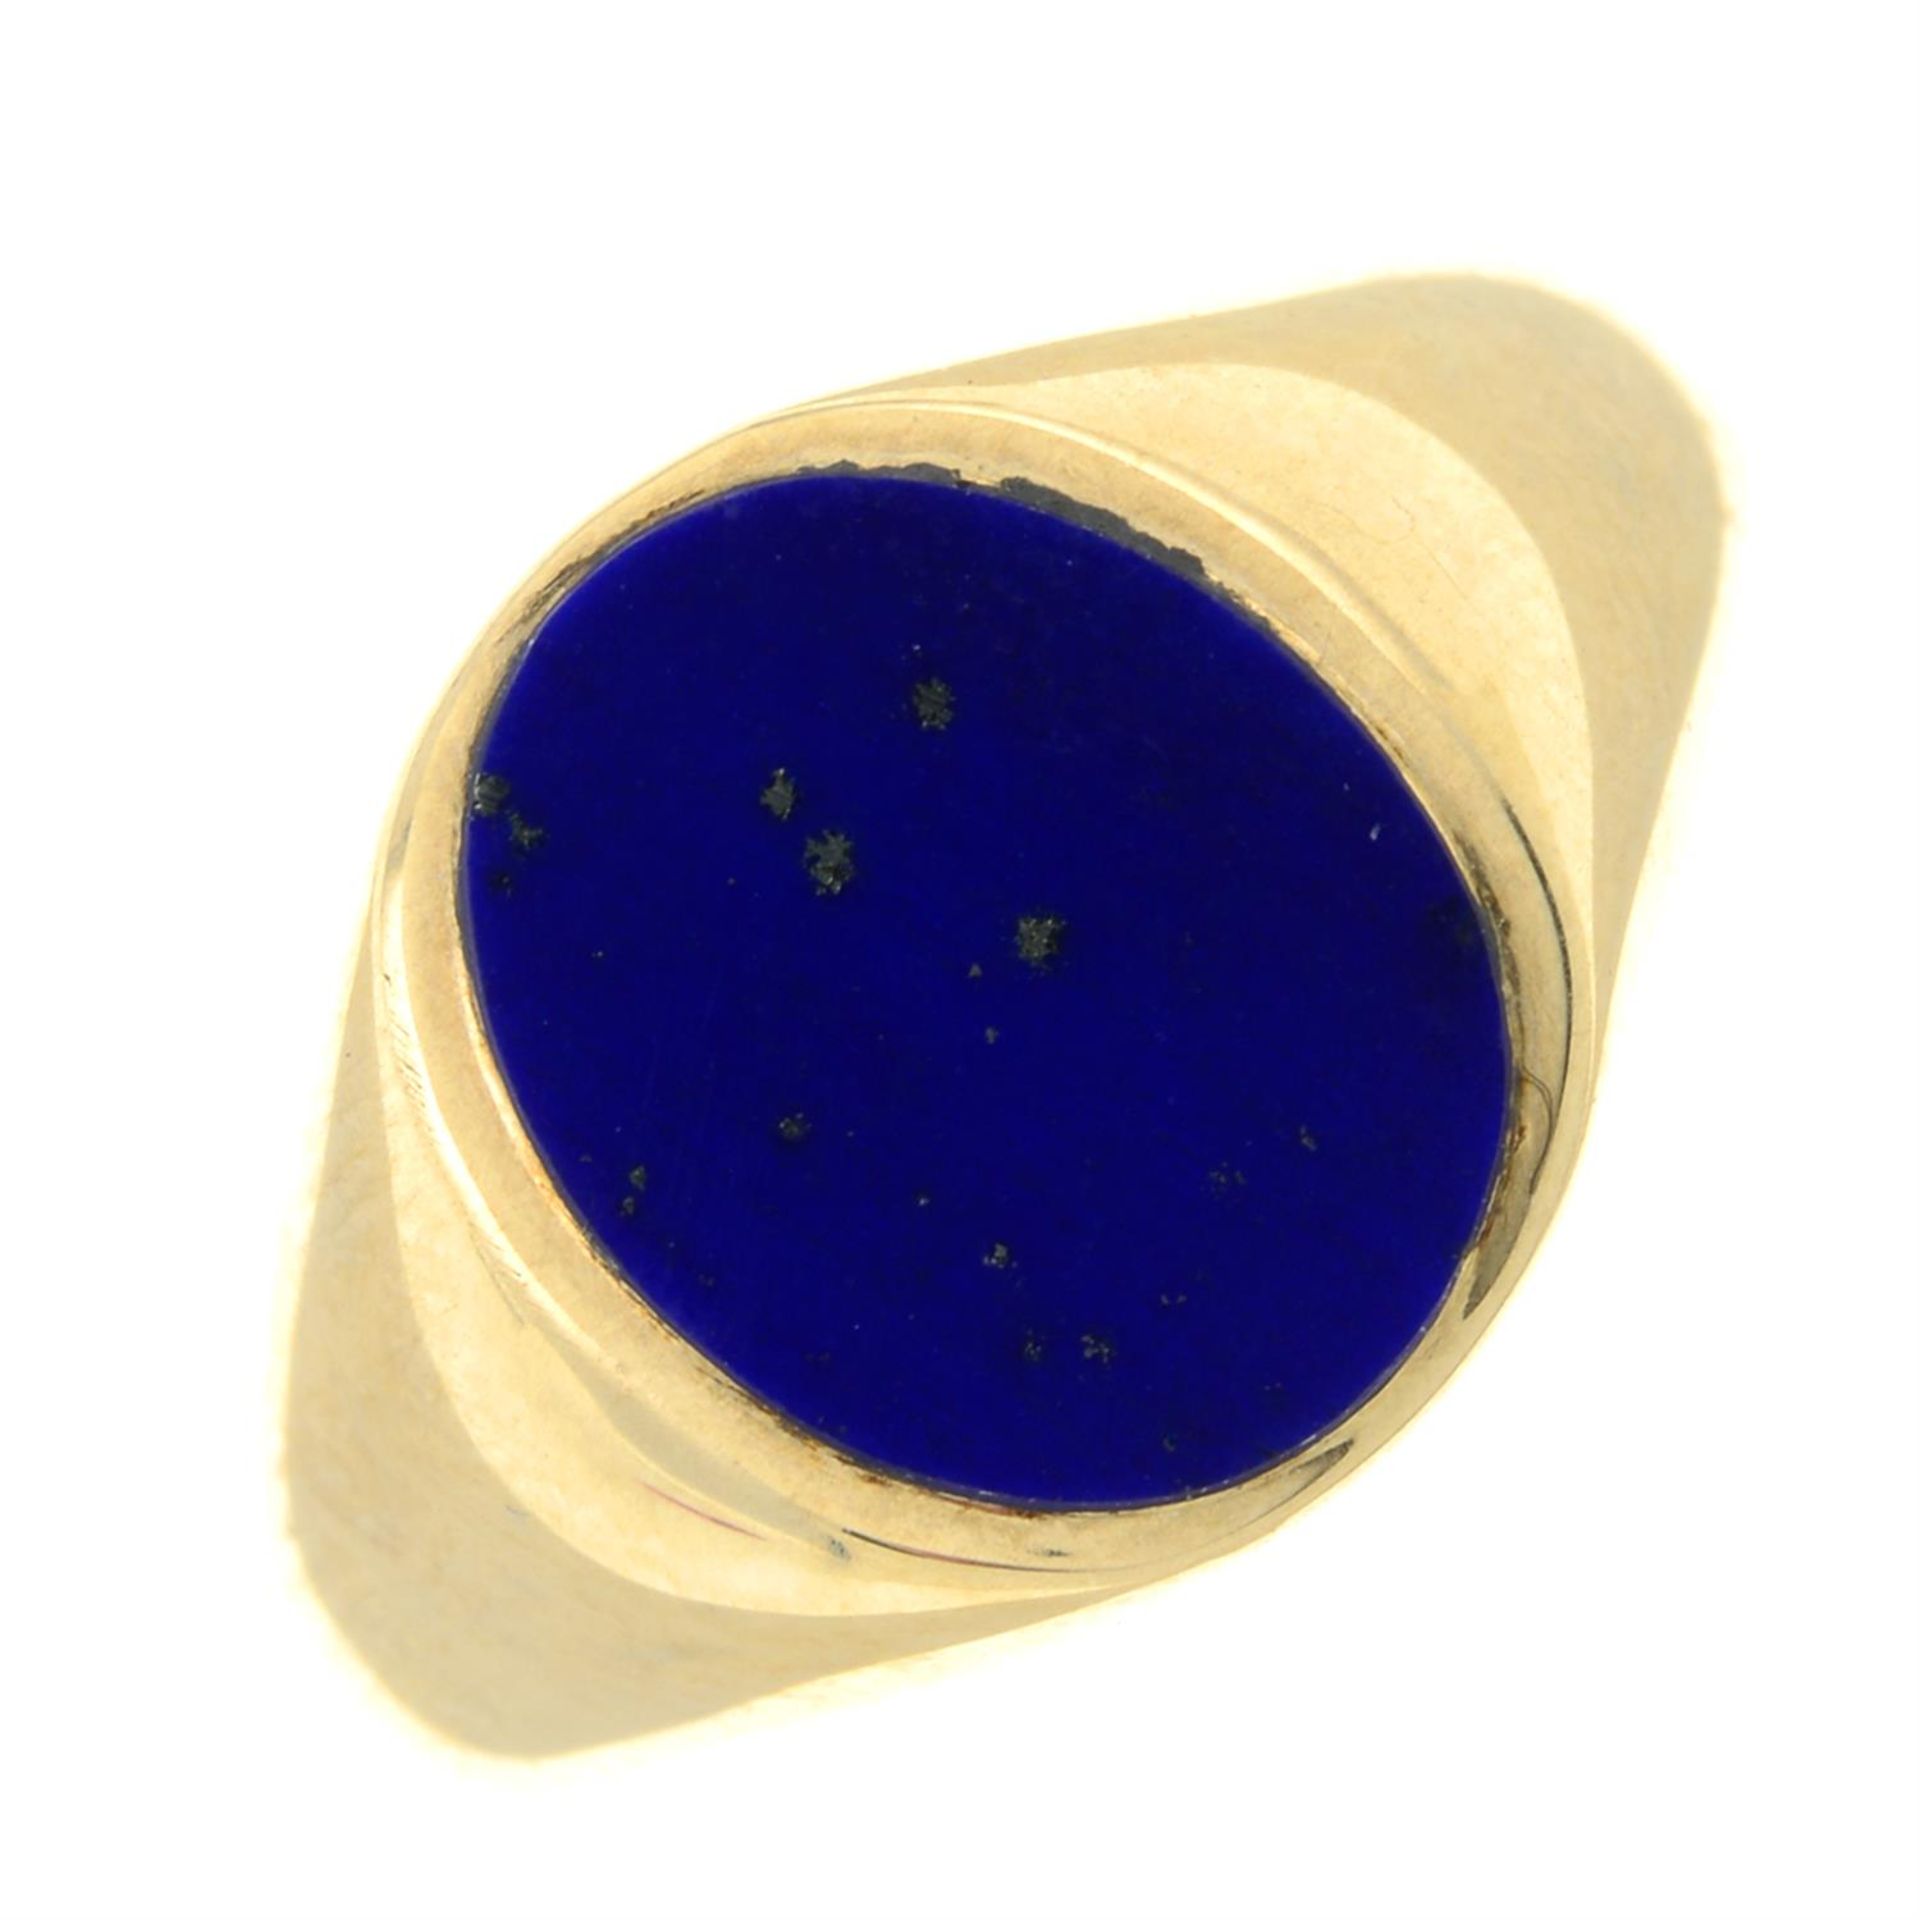 A 9ct gold lapis lazuli signet ring.